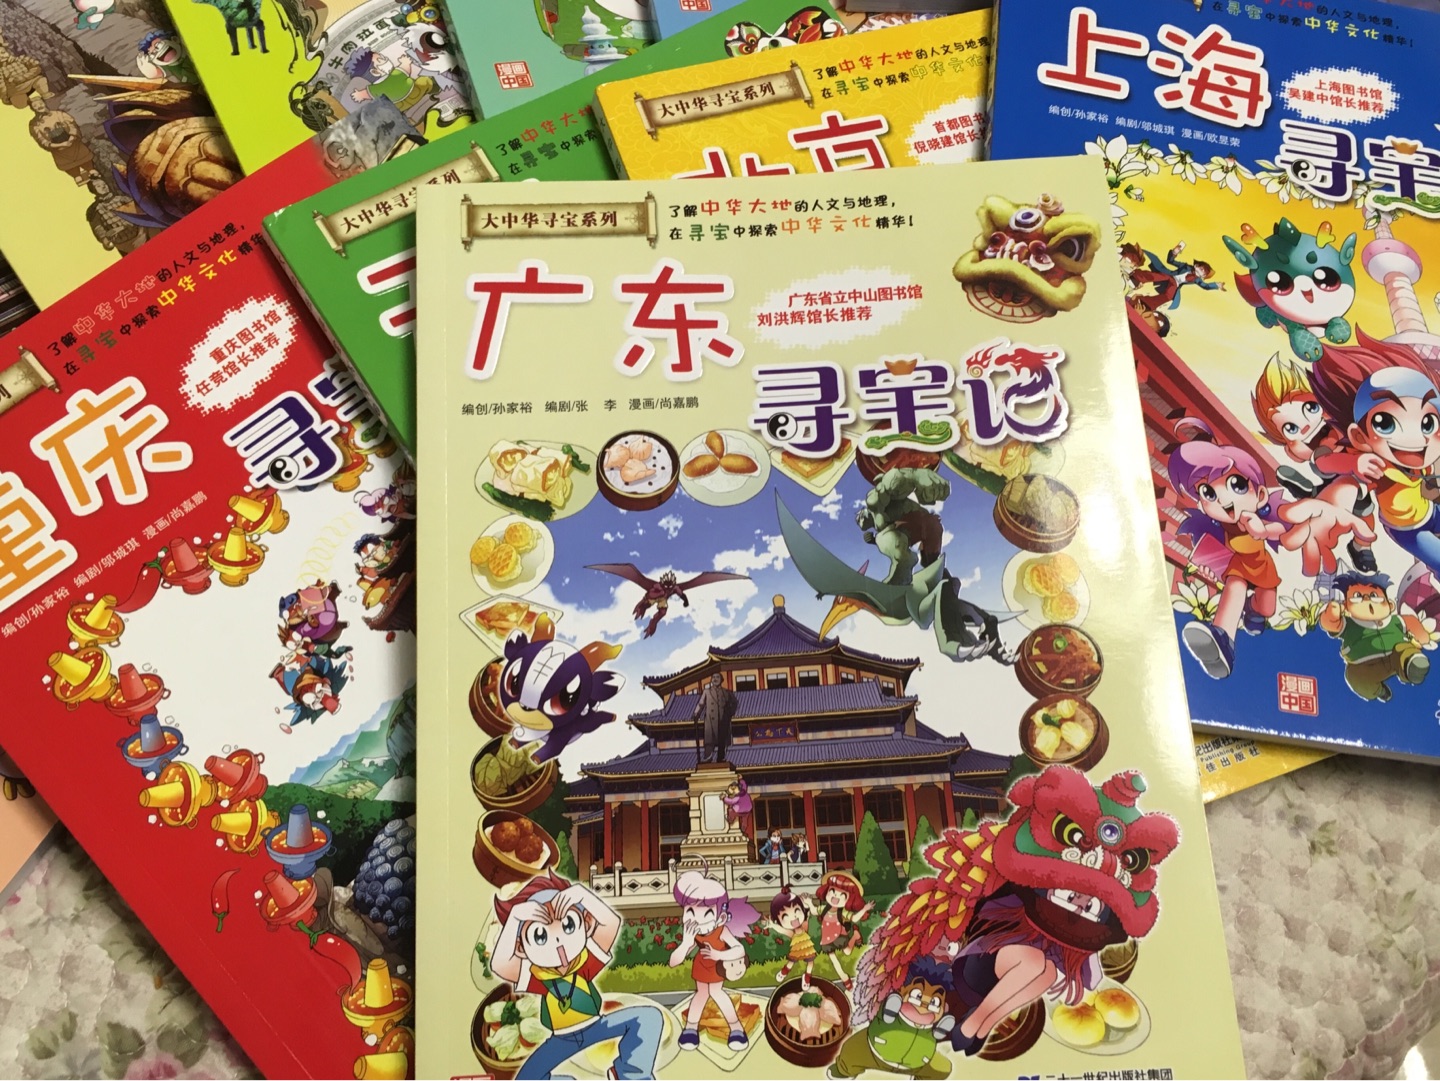 孩子期中考试不错，决定送他一套《大中华寻宝记》丛书。漫画和中华人文地理知识融合为一，通俗易懂。物流很快，满意。